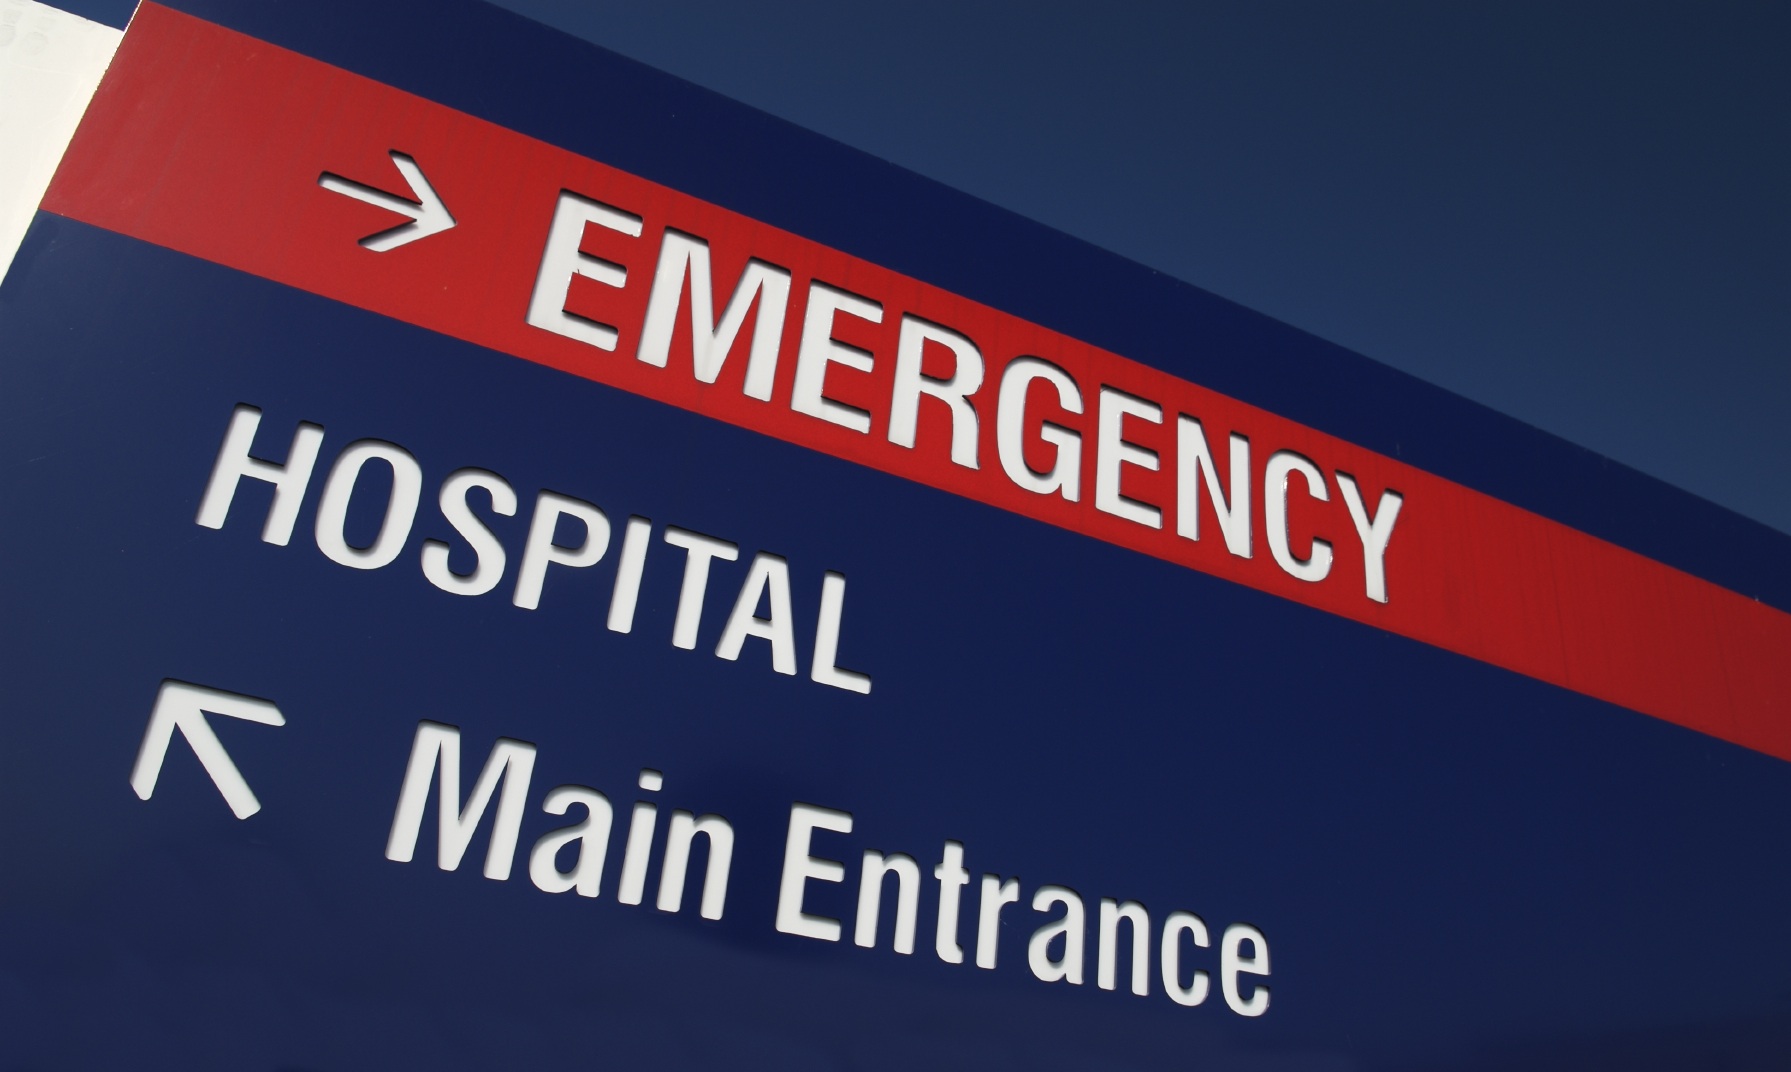 er-hospital-sign